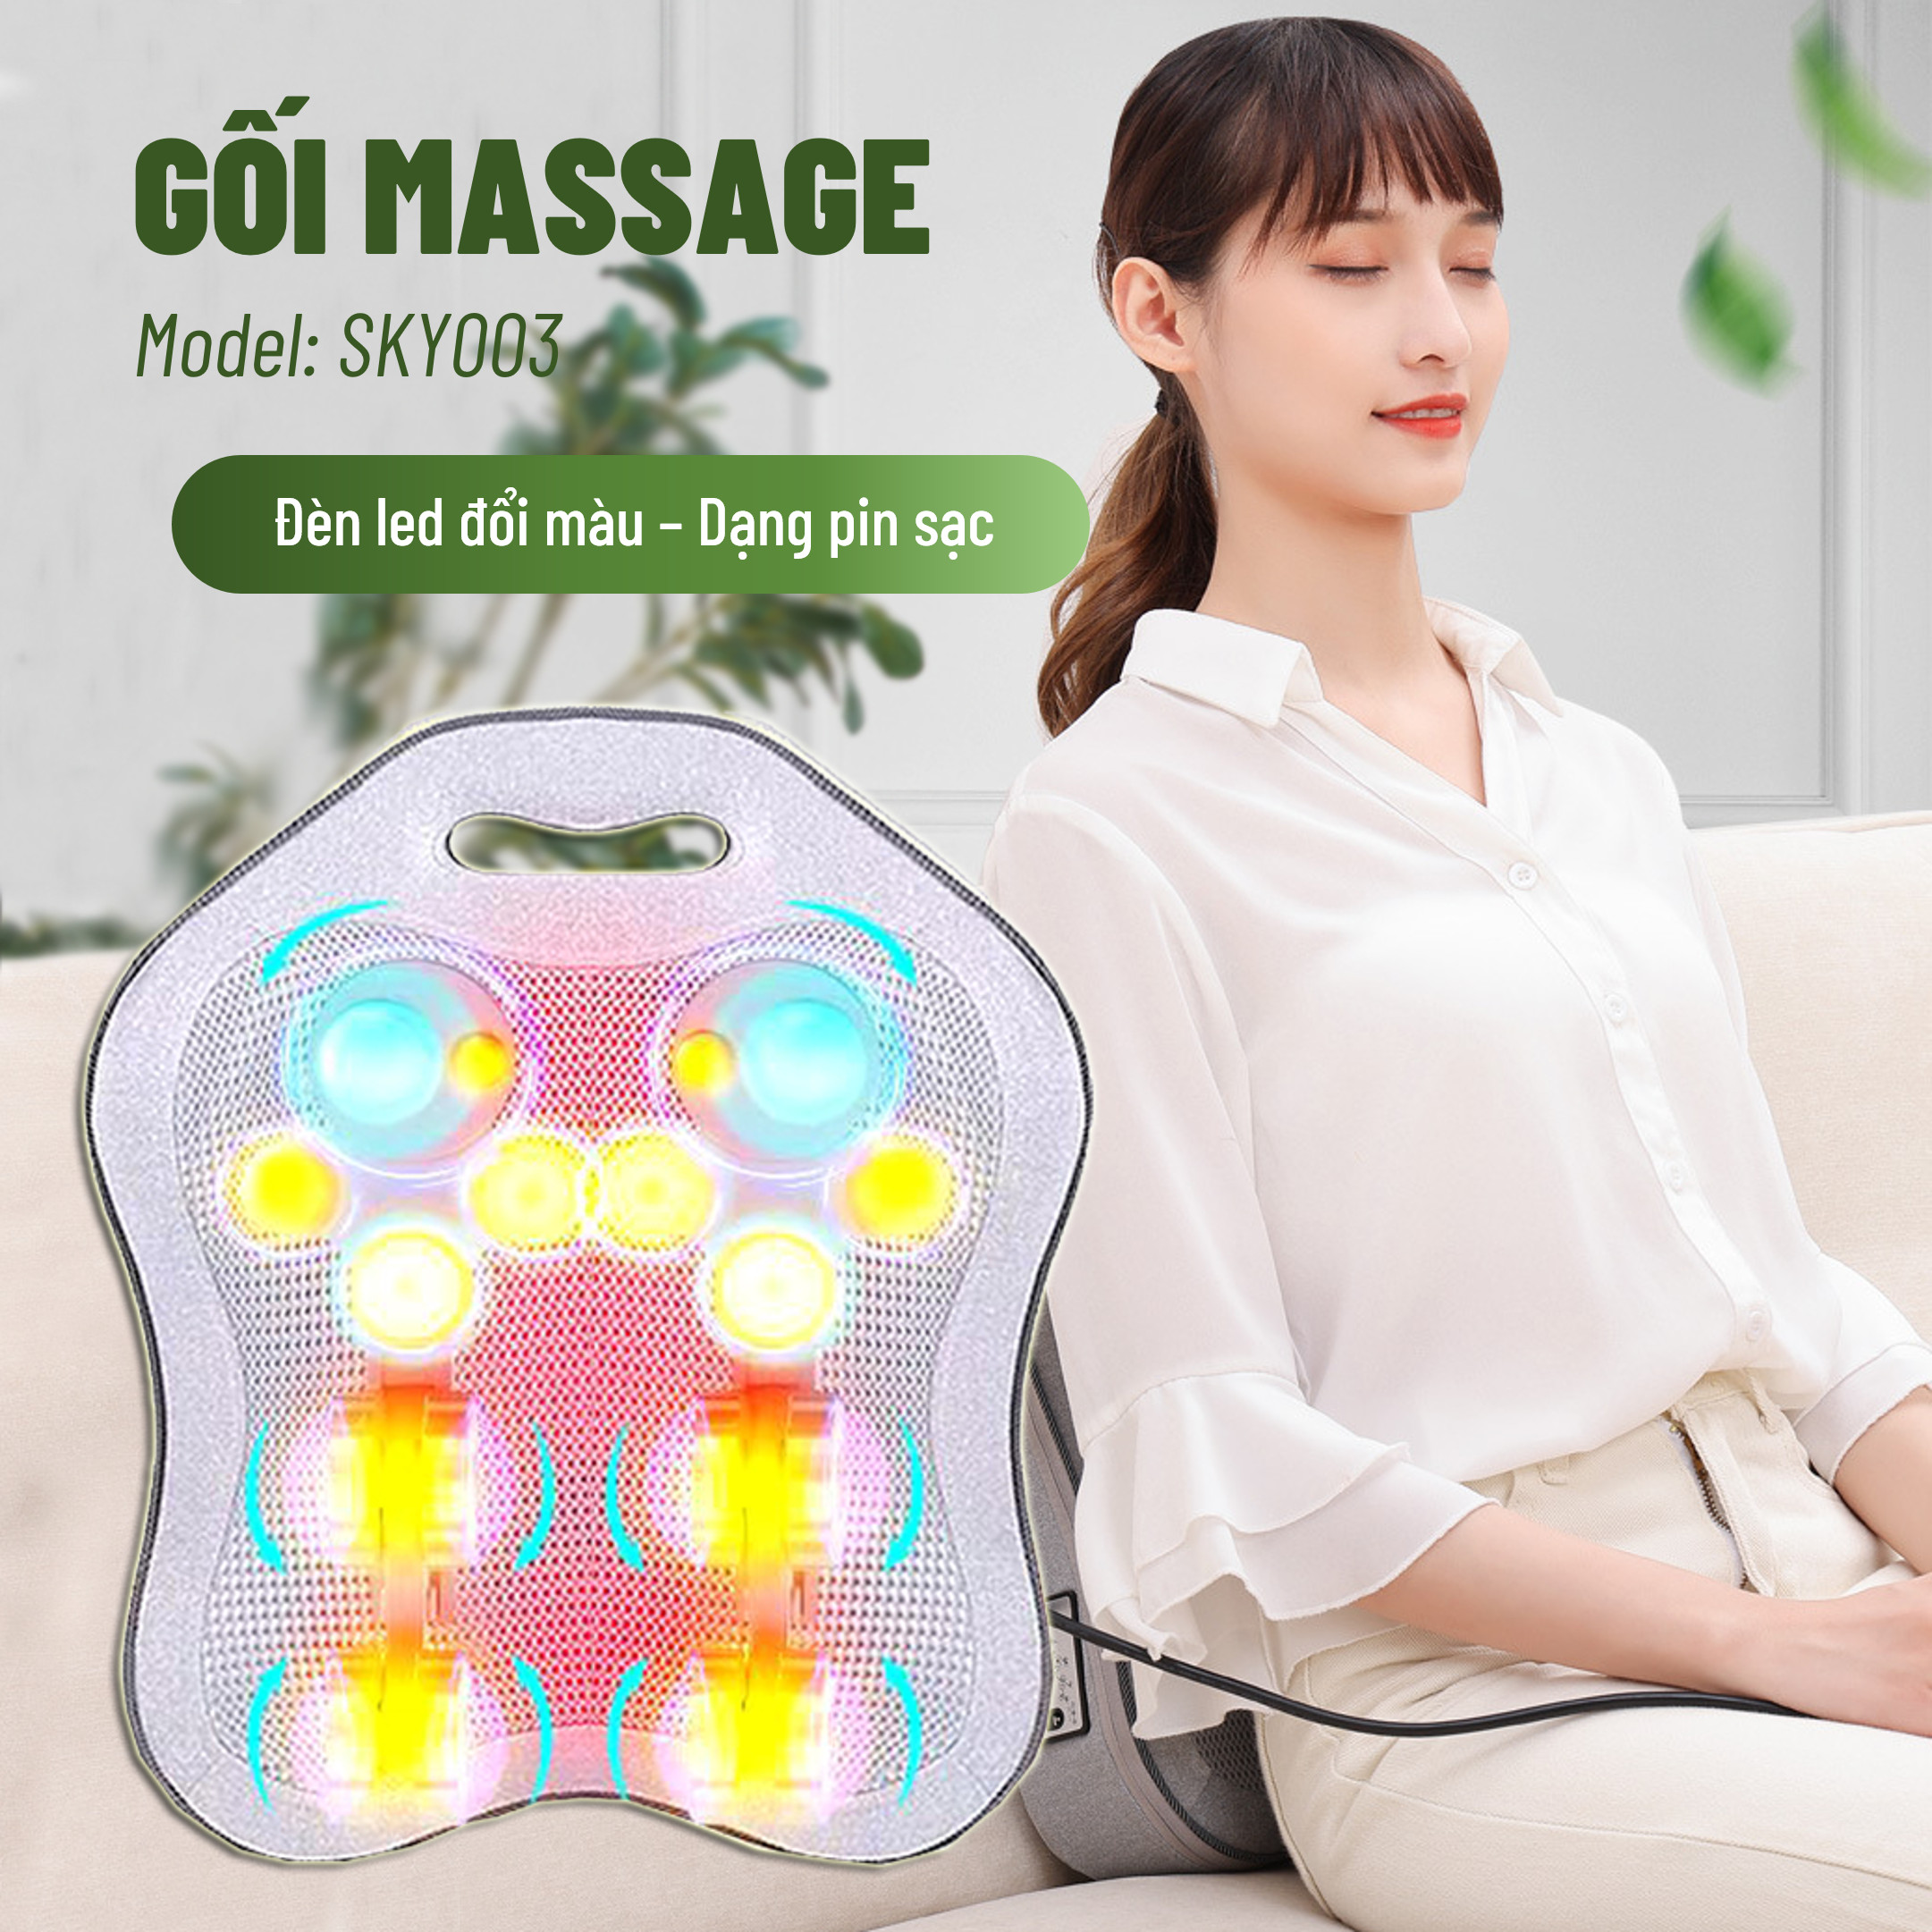 Gối Massage Hồng Ngoại đèn led 7 màu MODEL 2021 - Giúp Mát Xa Vai, Cổ, Gáy, Cột Sống Lưng Đa Năng Kết Hợp Với Chế Độ Rung Và Nhiệt - Chất Liệu vải nỉ cao cấp